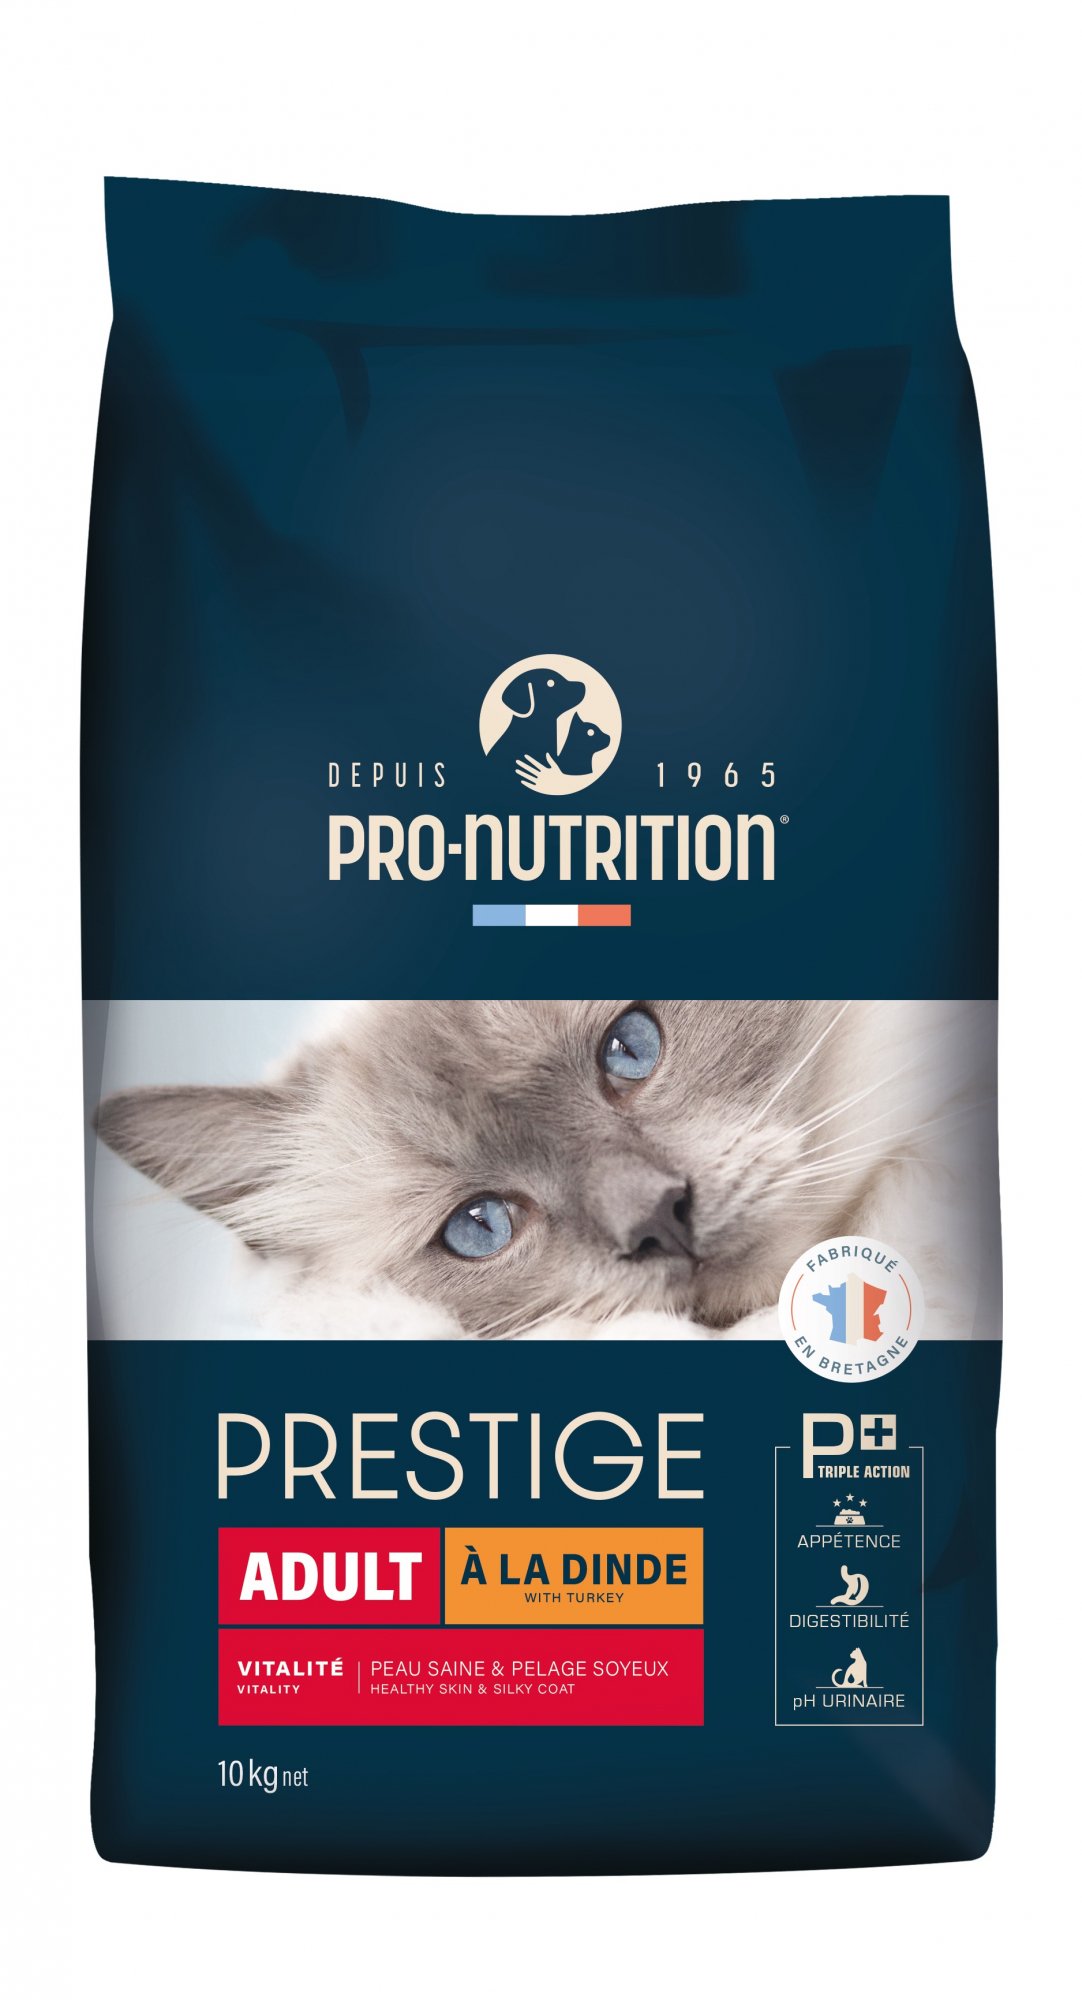 PRO-NUTRITION Flatazor CROCKTAIL Adult mit Pute für erwachsene Katzen